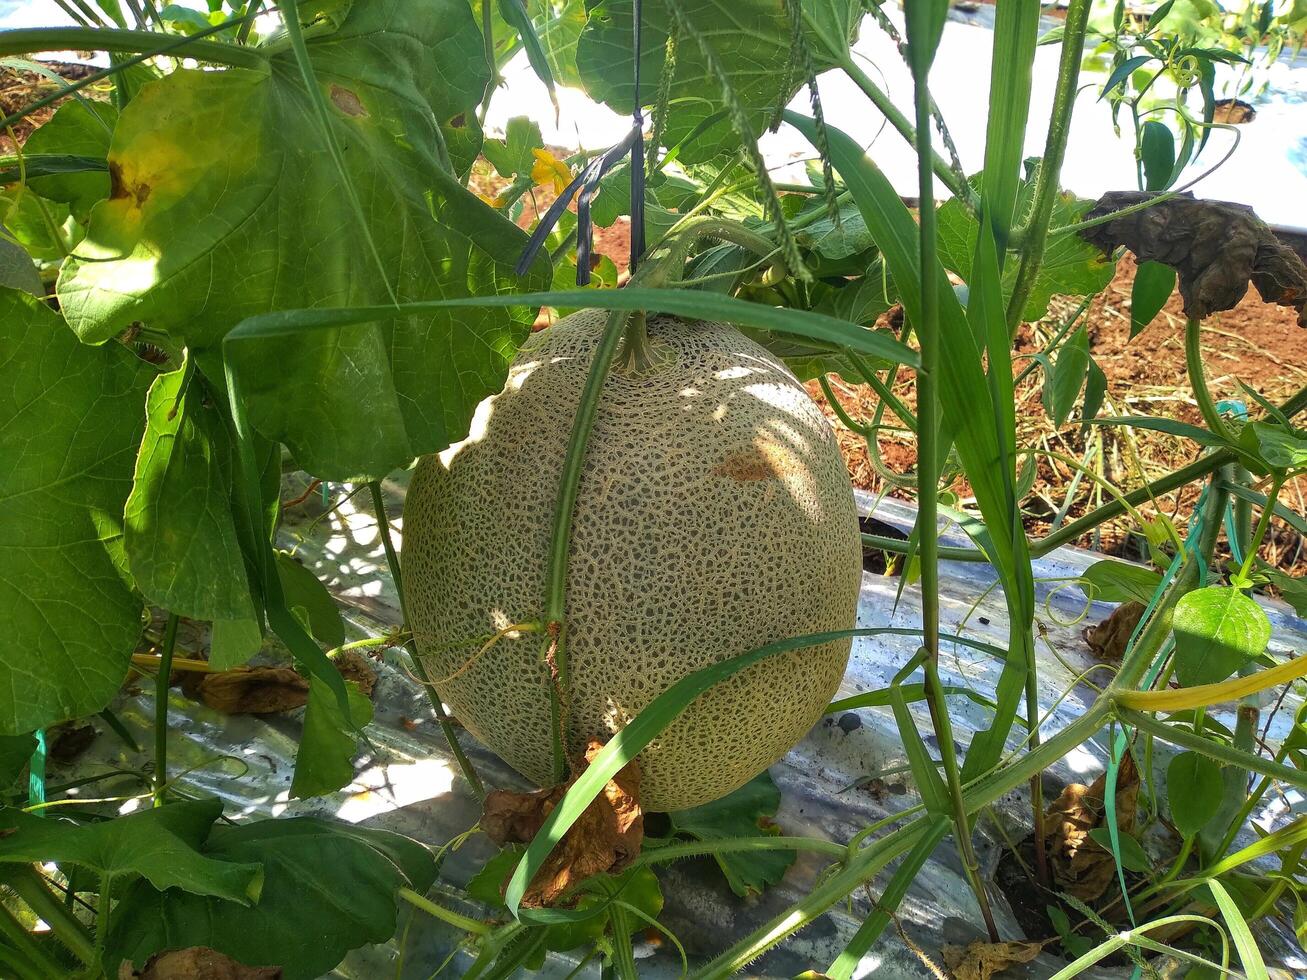 vers meloenen of groen meloenen of meloen meloenen planten groeit in kas ondersteund door draad meloen netten. foto